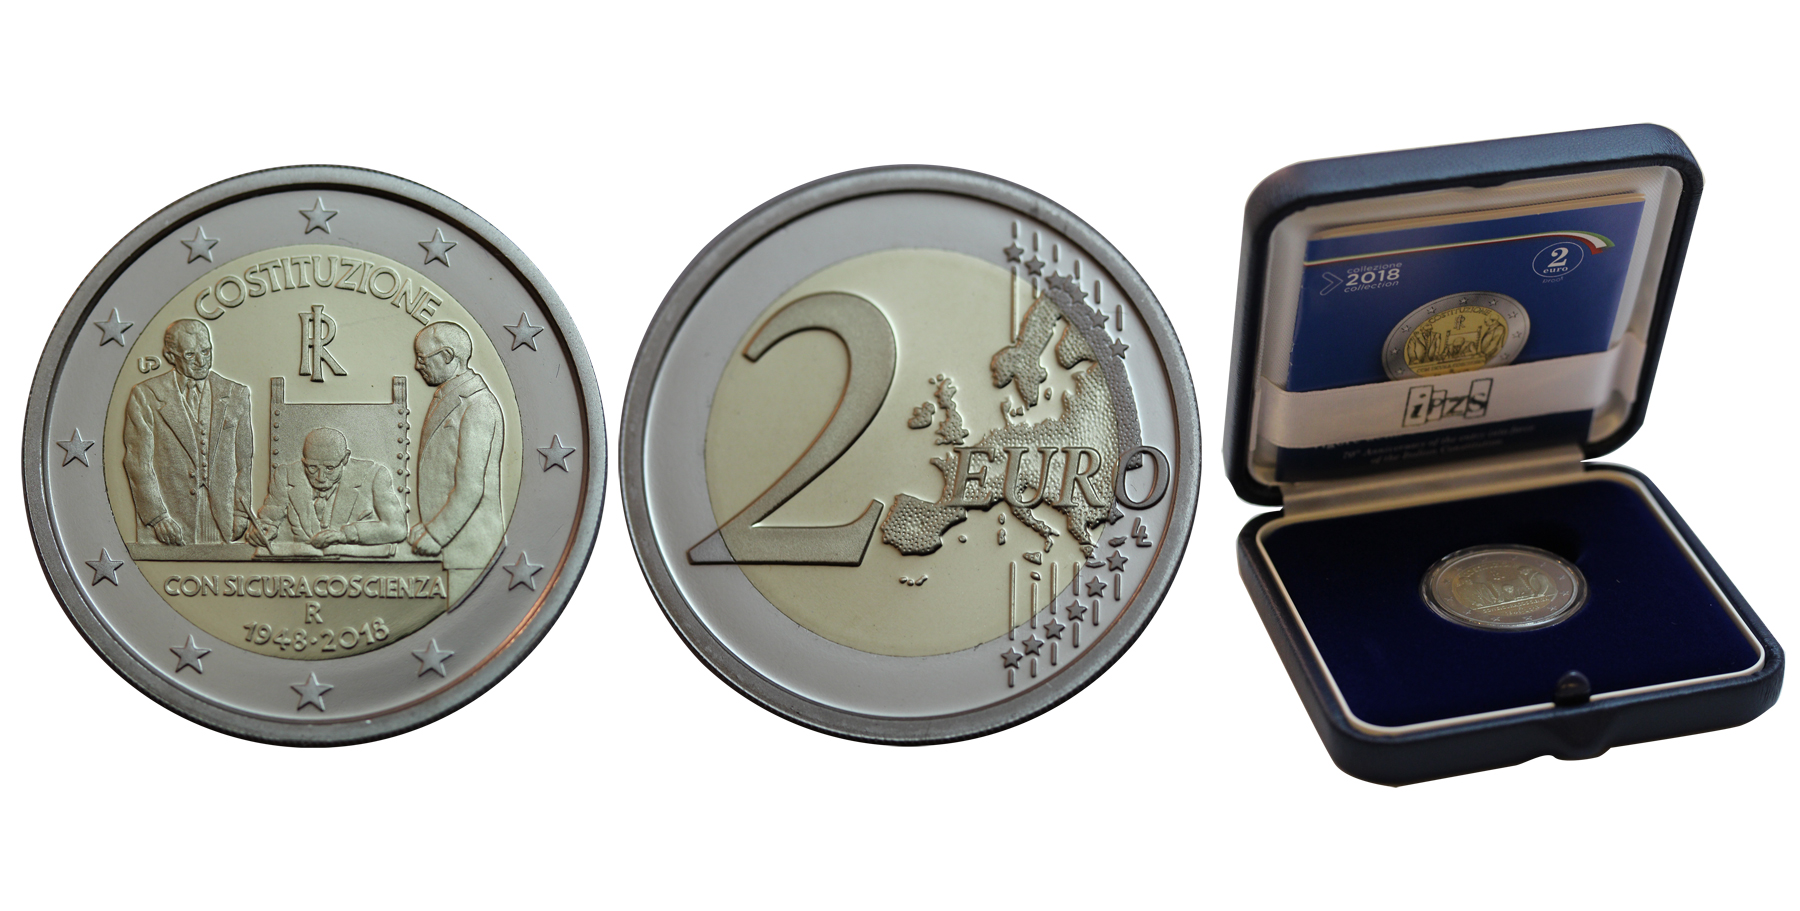 70 Anniversario della Costituzione Italiana - 2 Euro in confezione ufficiale